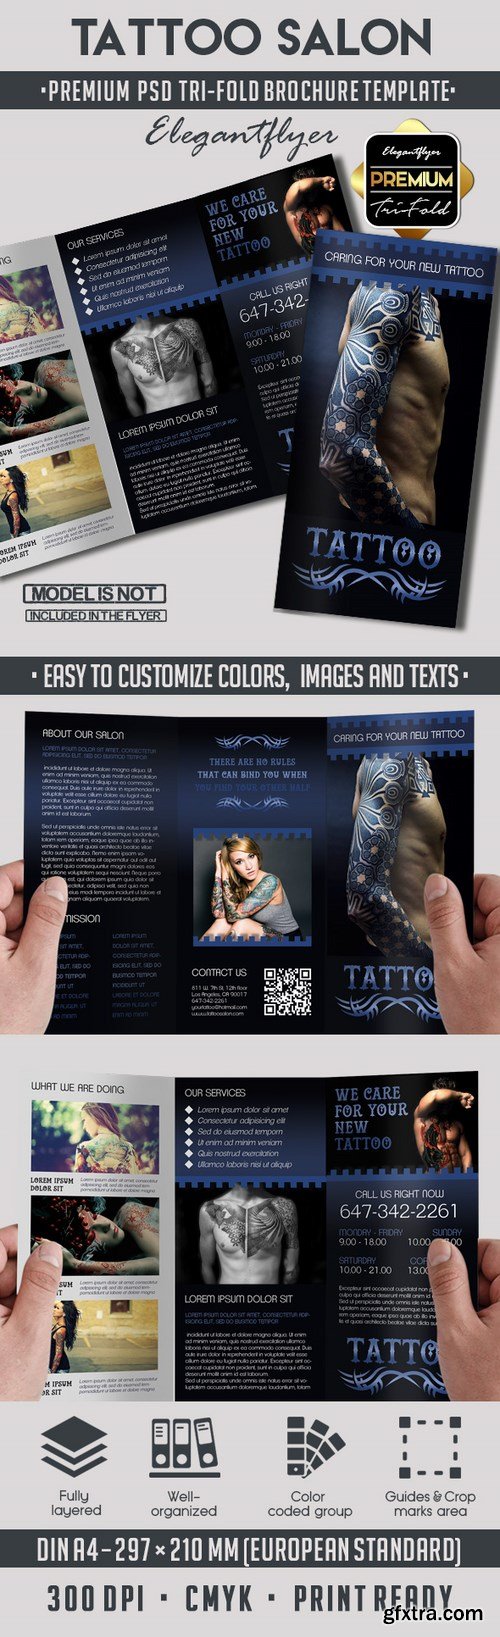 Tattoo Salon – Premium Tri-Fold PSD Brochure Template